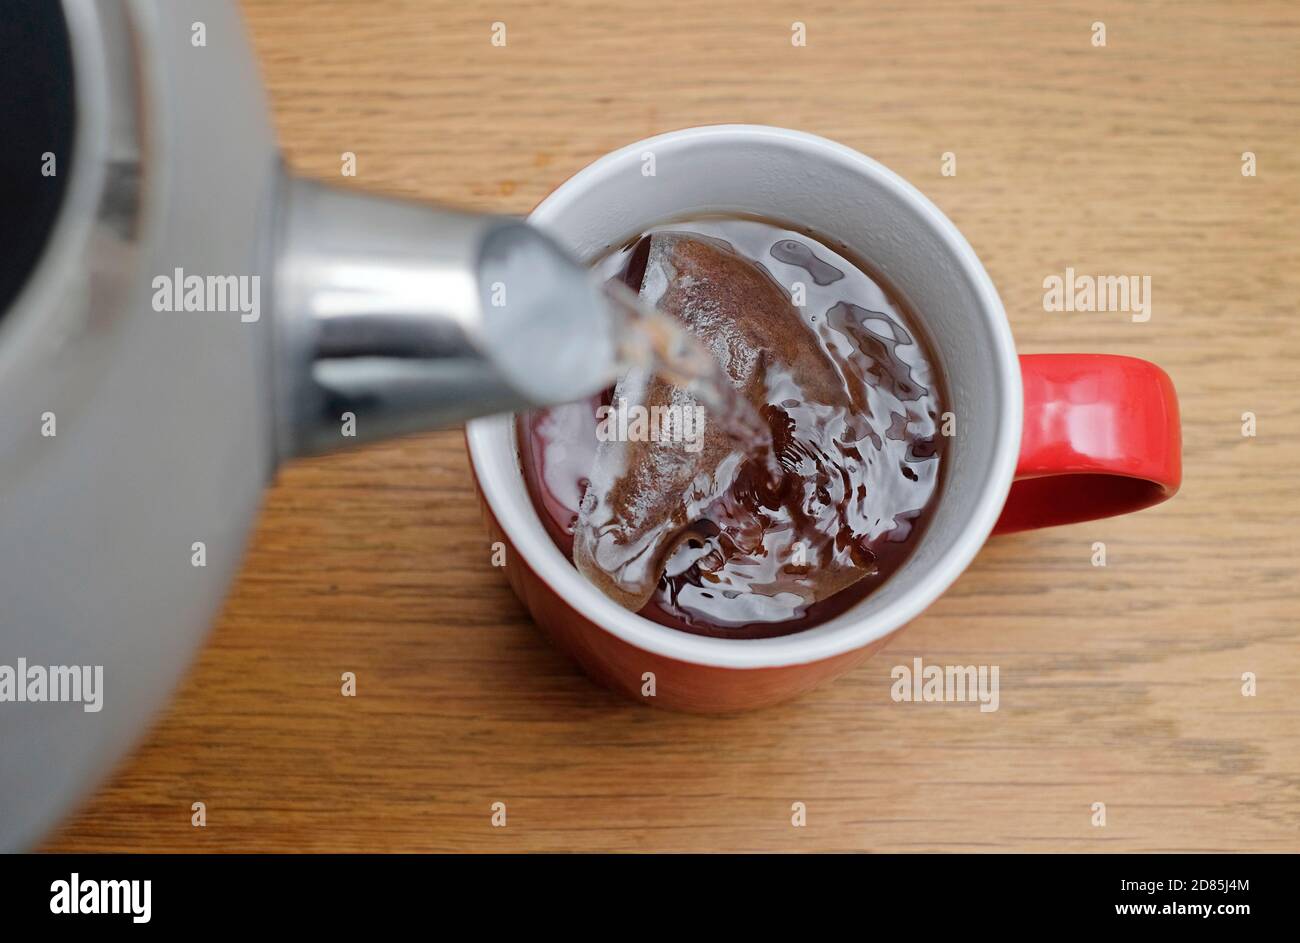 preparar una taza de té, vertiendo agua caliente sobre el tebag en una taza roja, norfolk, inglaterra Foto de stock